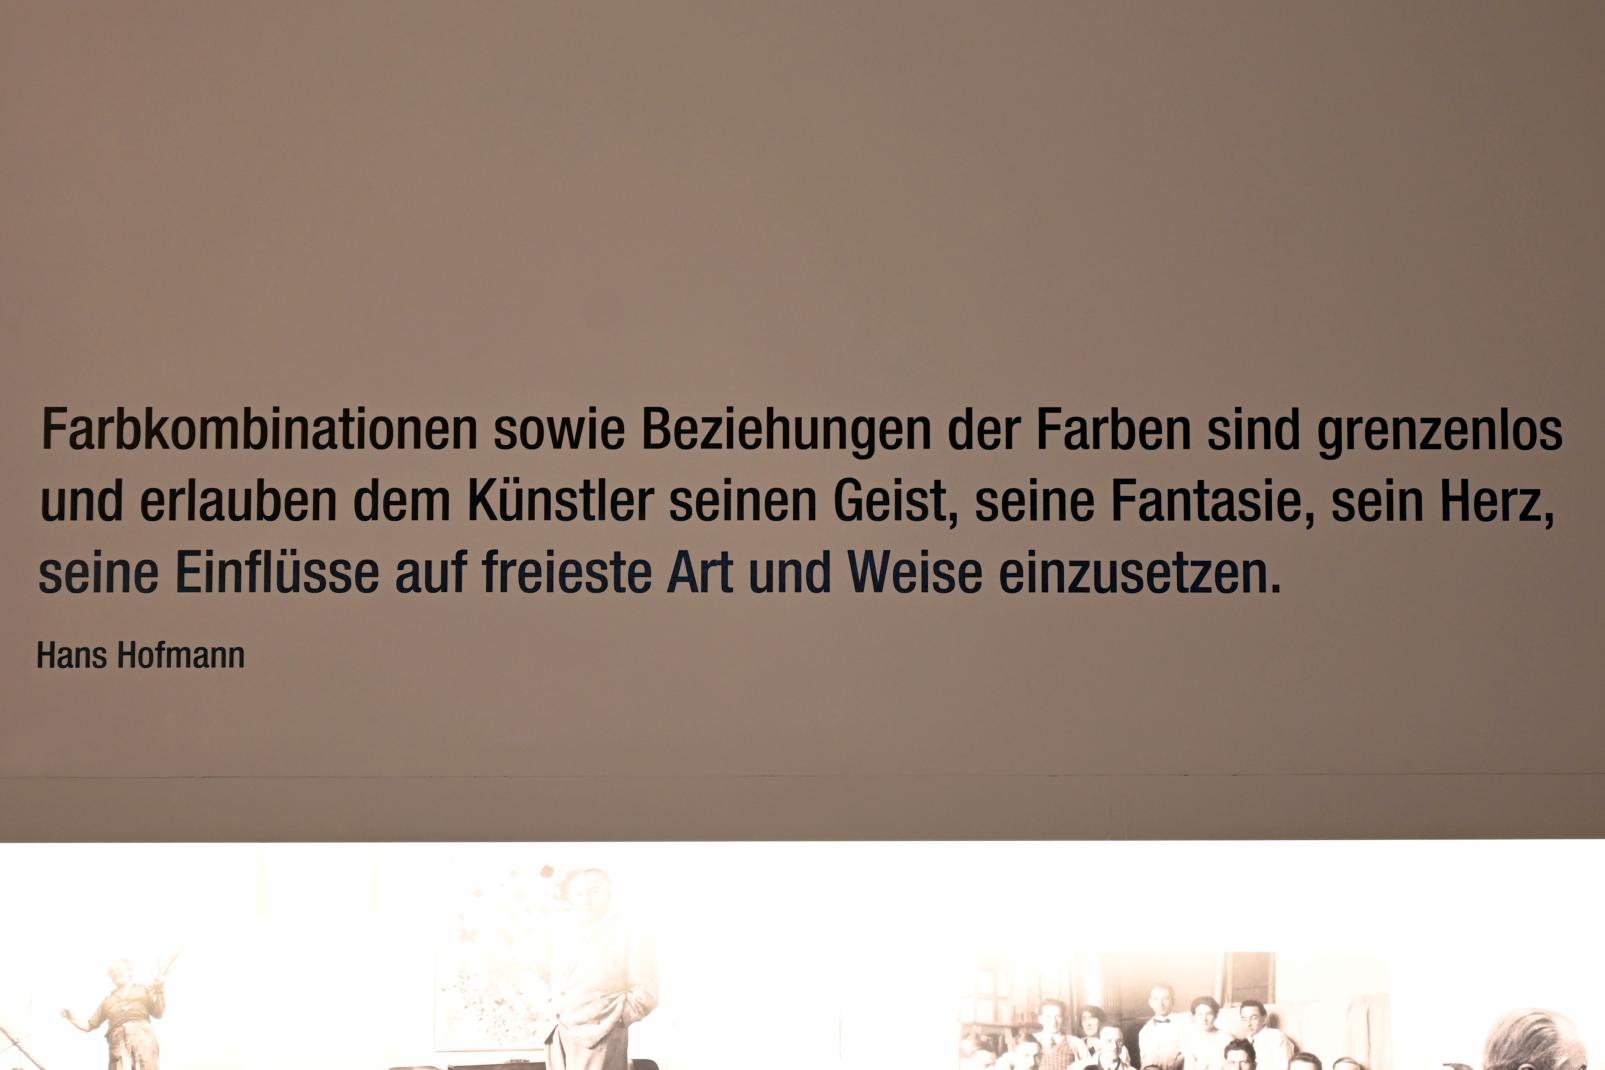 Neumarkt in der Oberpfalz, Museum Lothar Fischer, Ausstellung "Hans Hofmann. Chimbote 1950 - Farben für die neue Stadt" vom 23.10.2022-29.01.2023, Bild 14/22